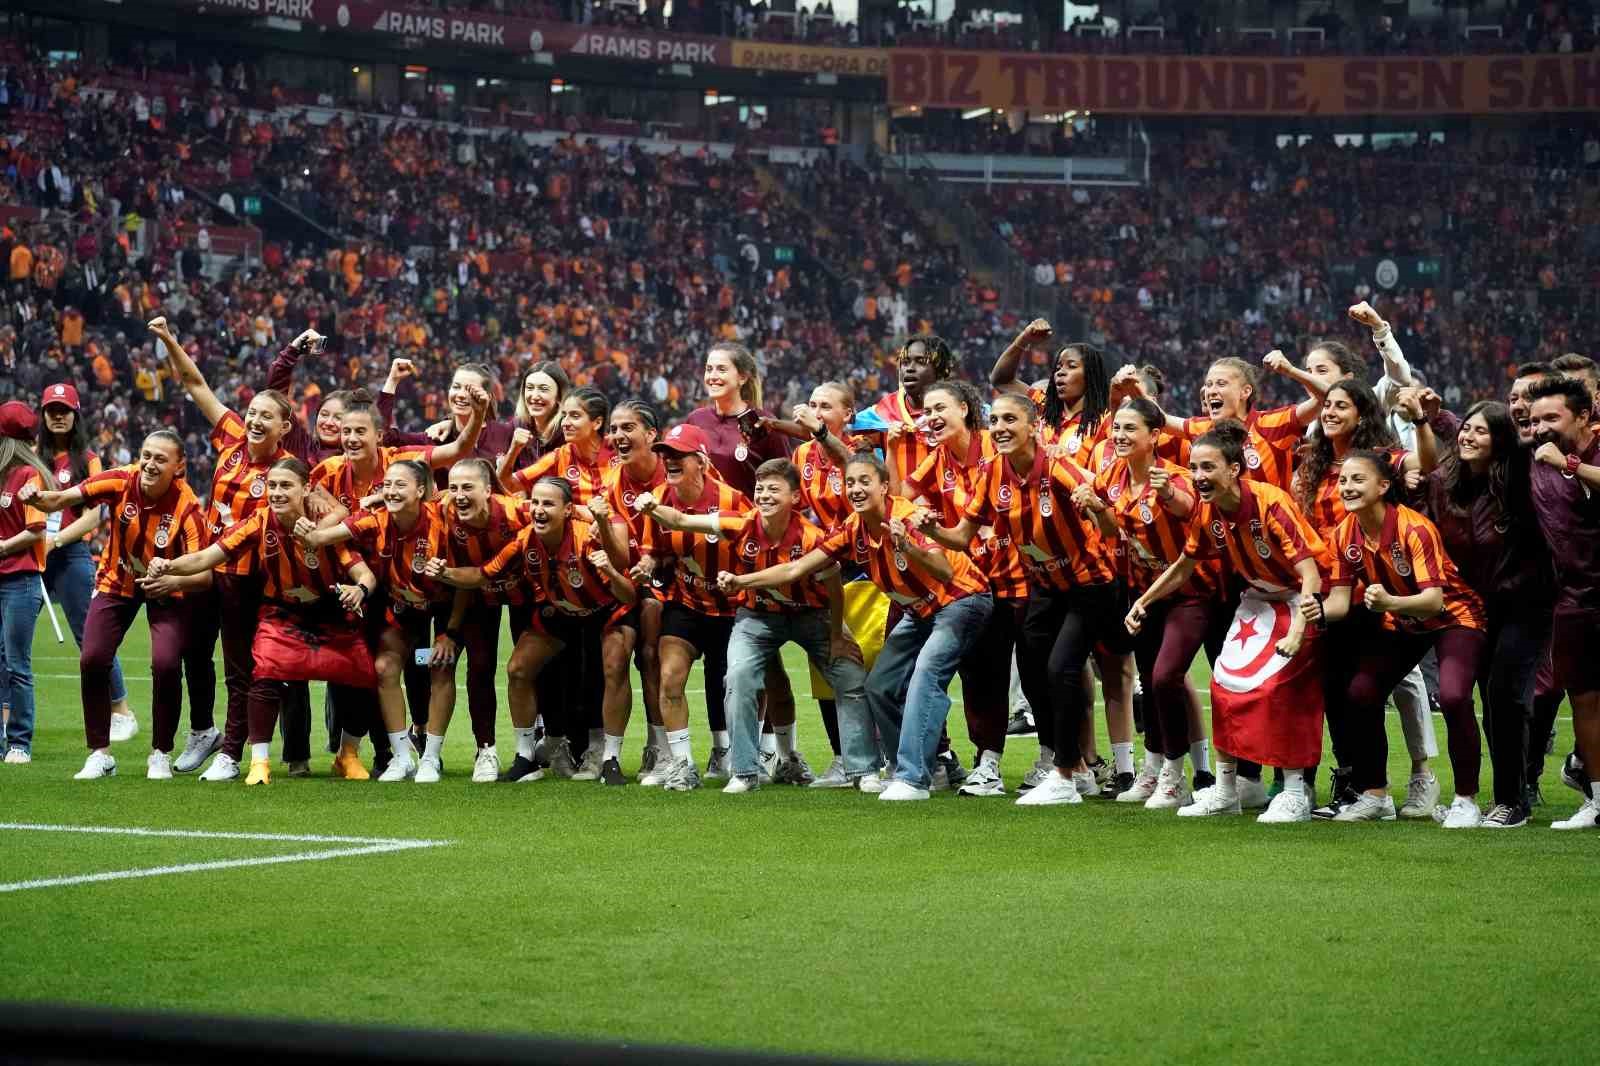 Şampiyon Galatasaray Kadın Futbol Takımı, RAMS Park’ta taraftarlarla buluştu
